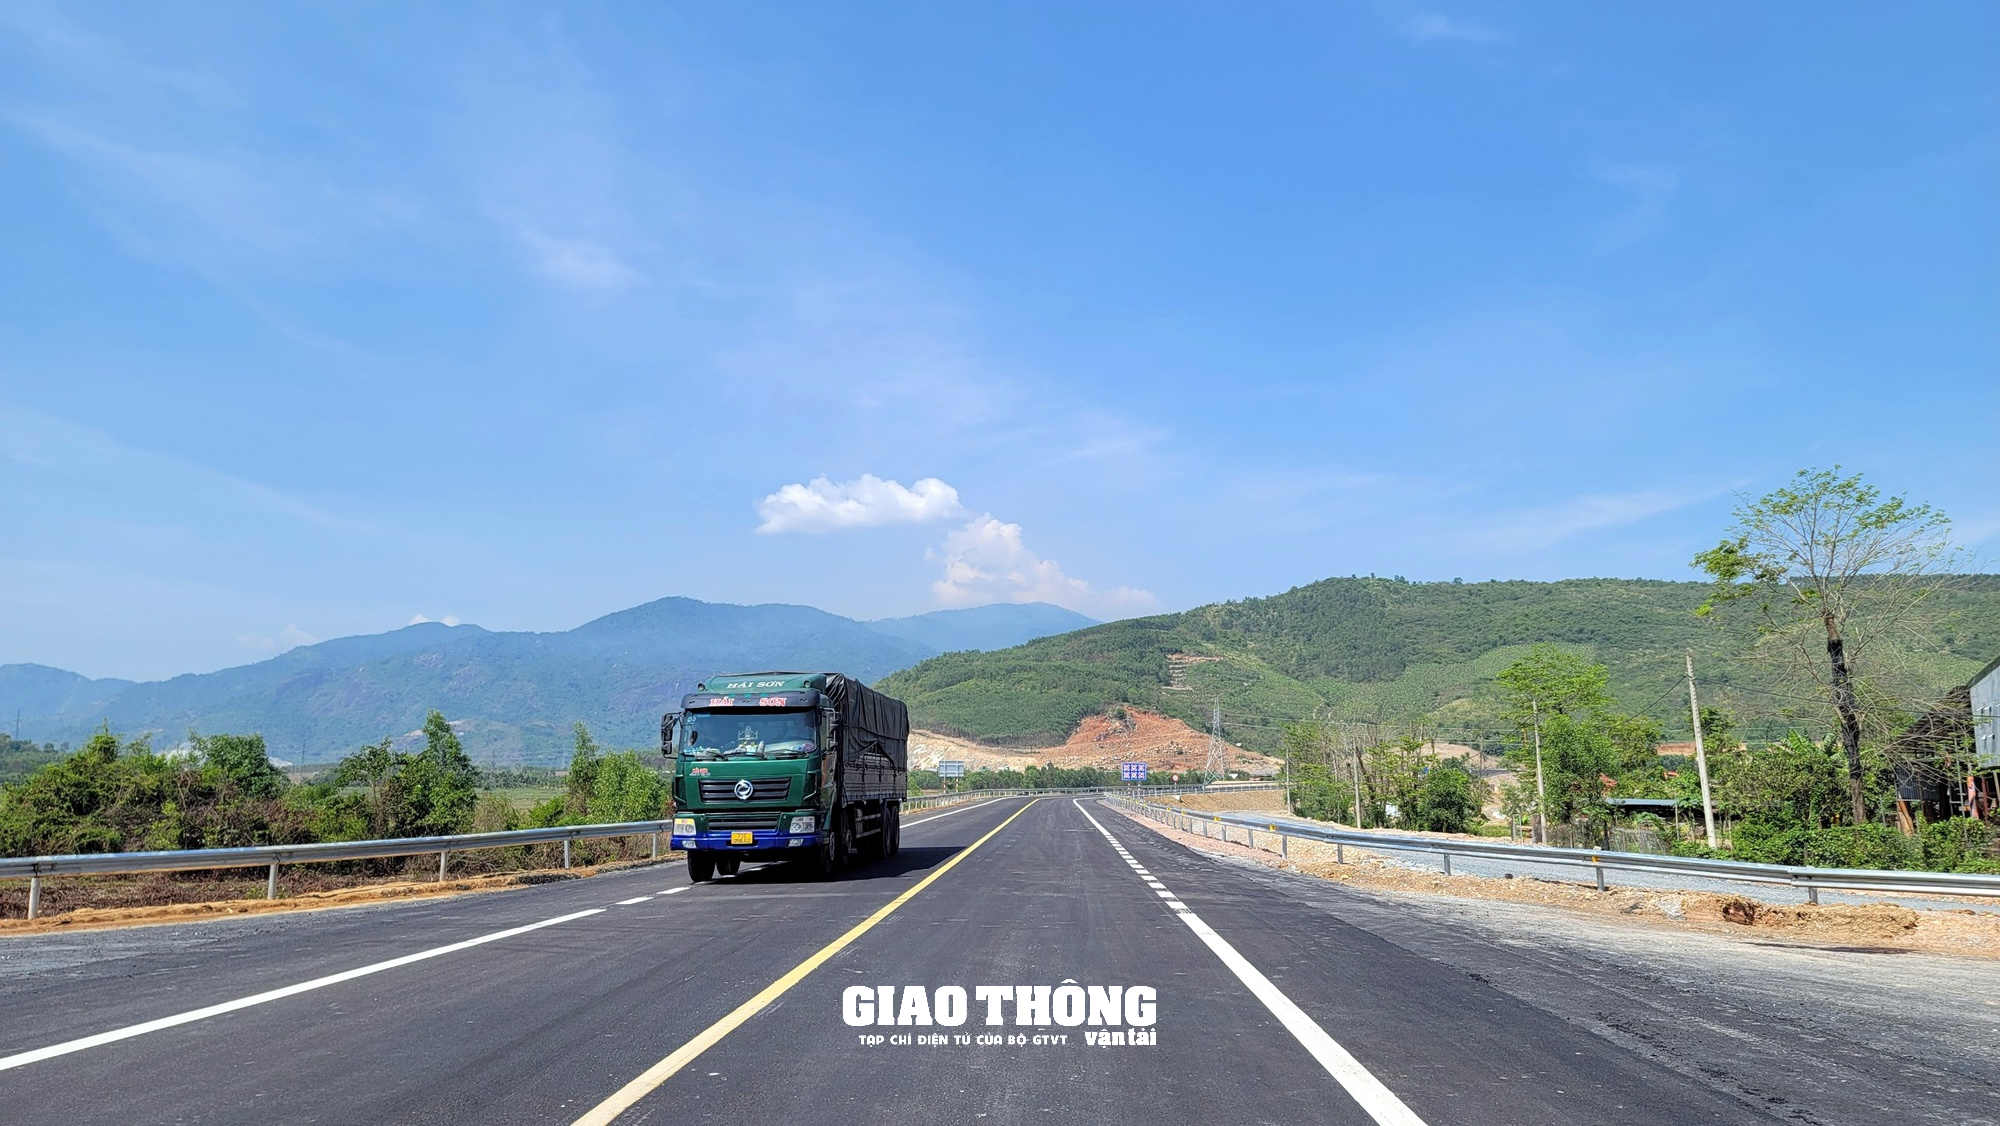 Thông tuyến cao tốc Nha Trang – Cam Lâm, các phương tiện đi như thế nào ? - Ảnh 1.